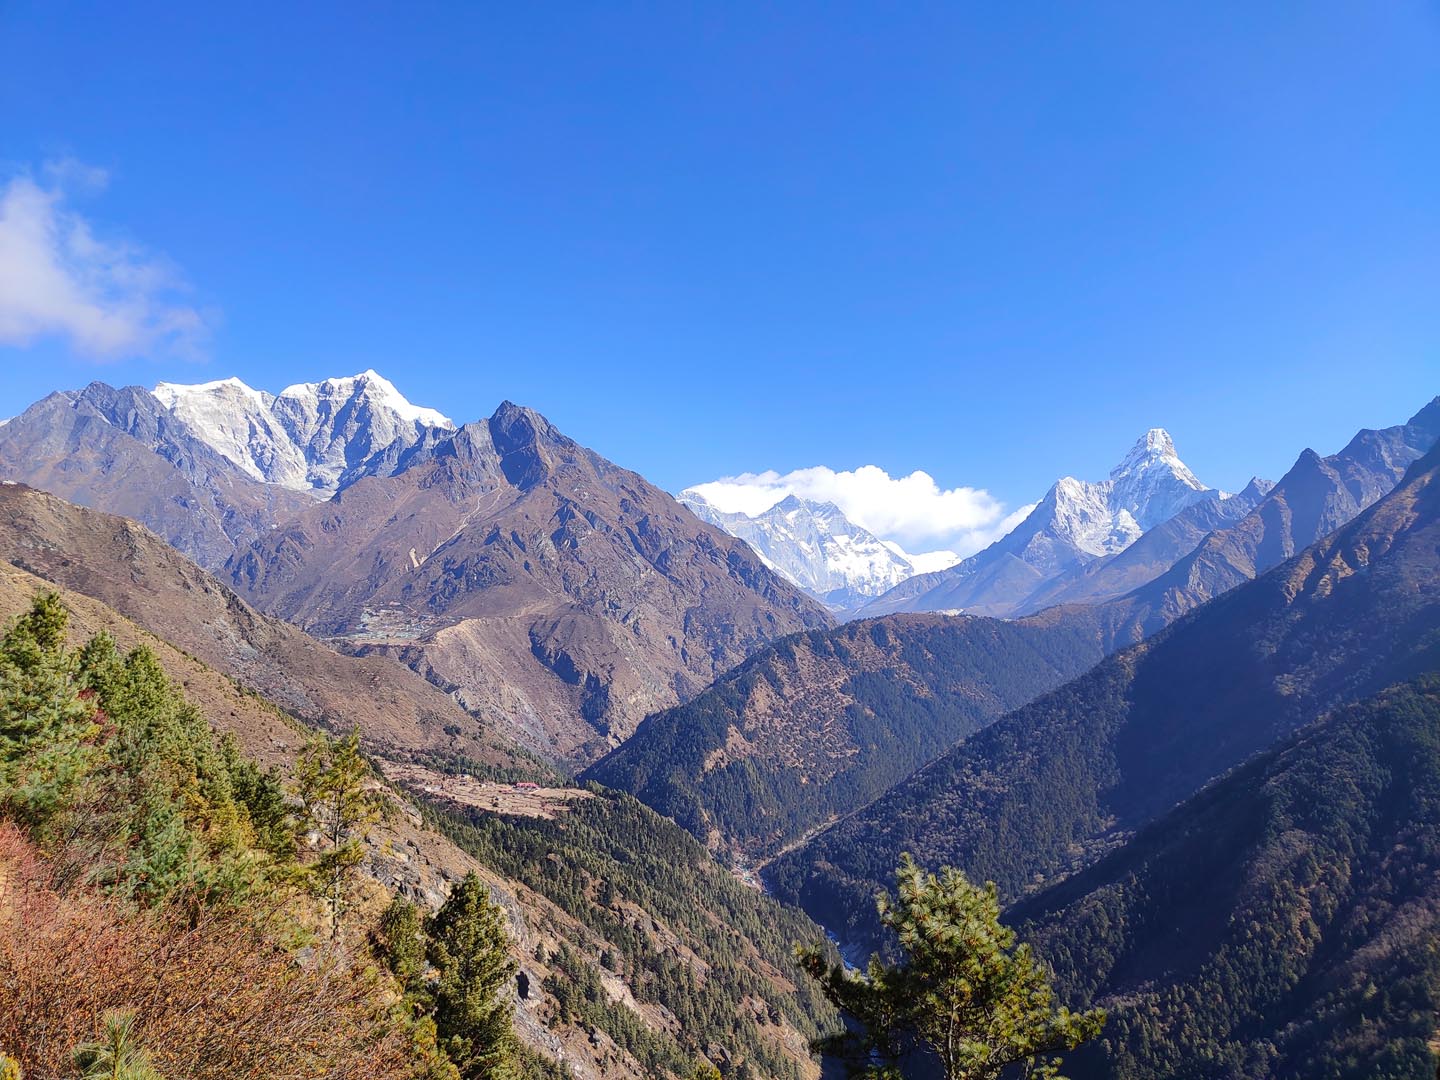 Himalayan views from above Namche Bazaar